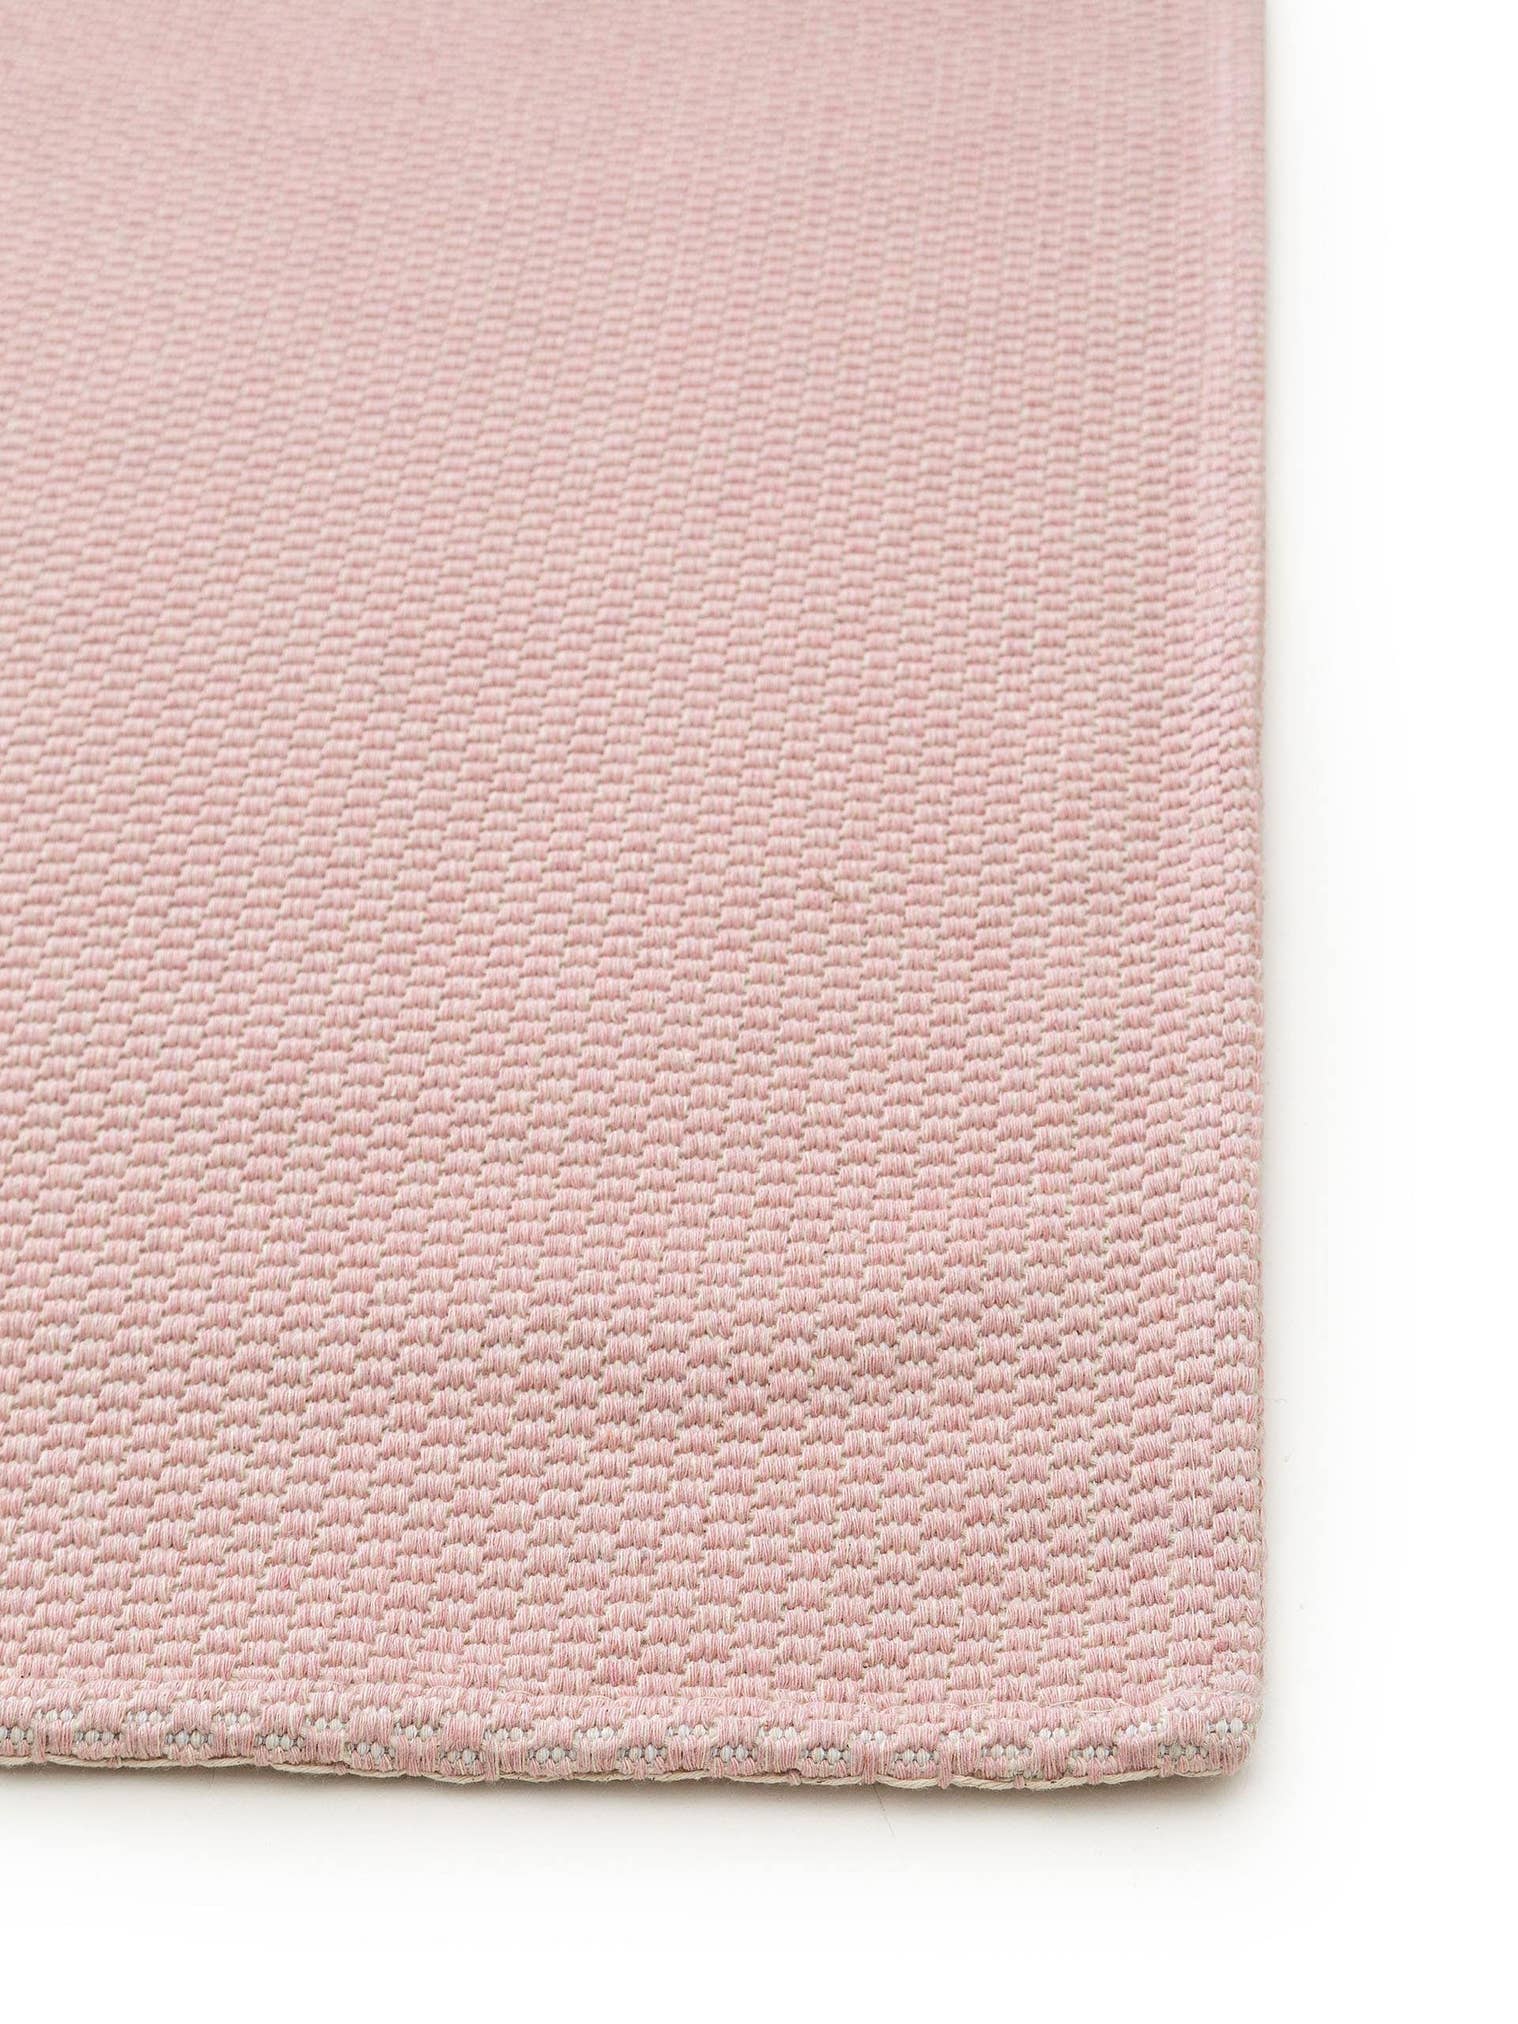 Teppich aus 100% Baumwolle in Rosa mit bis 5 mm hohem Flor von benuta Nest